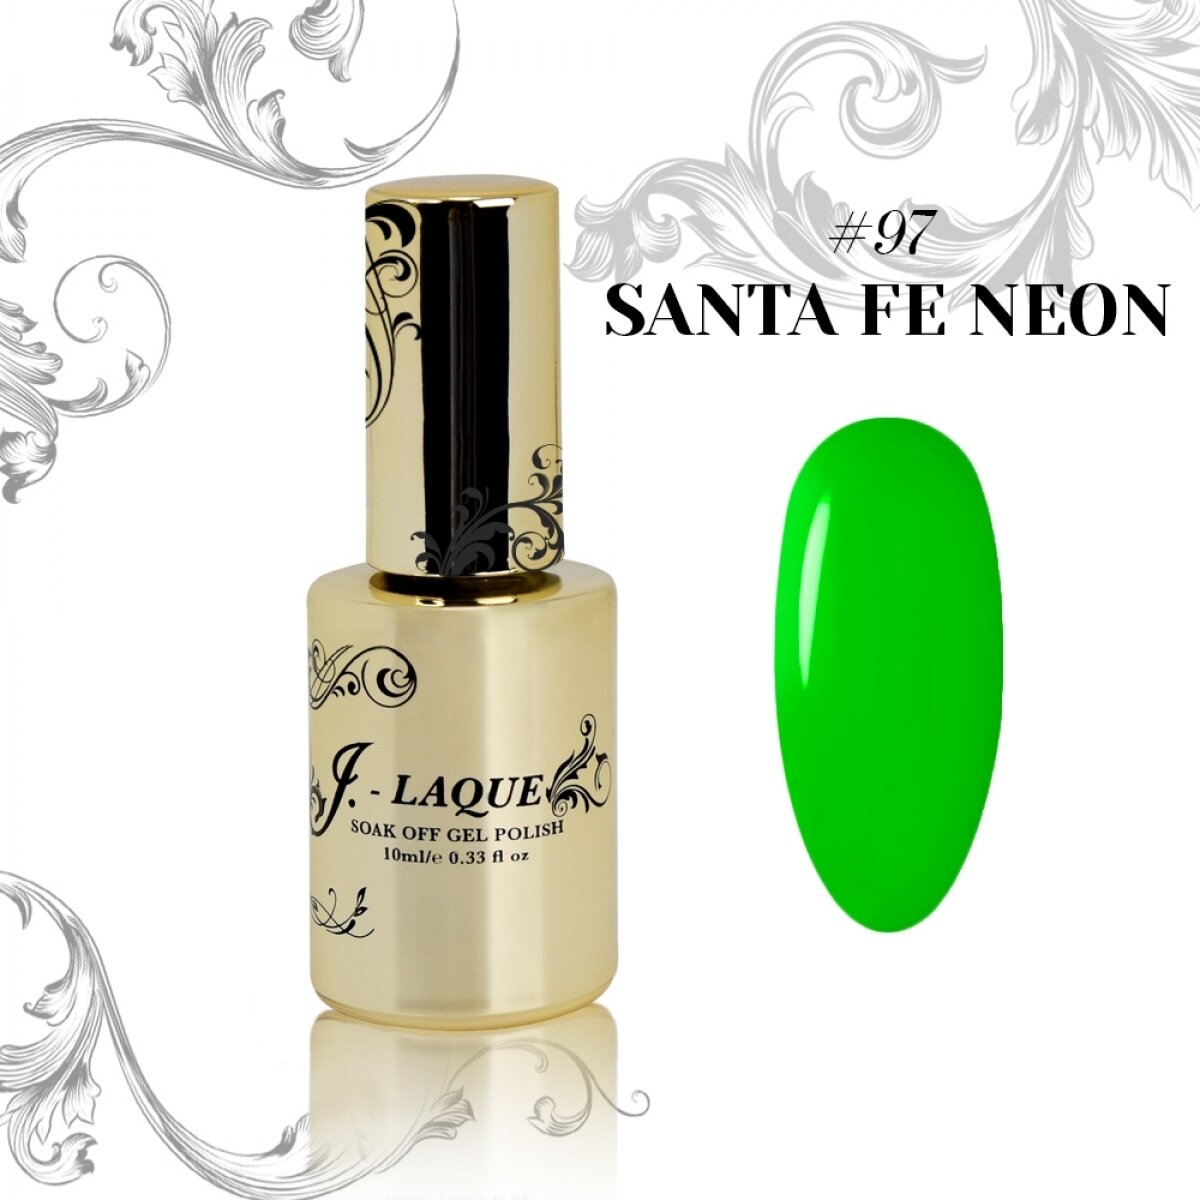 J-Laque #097 - Santa Fe Neon